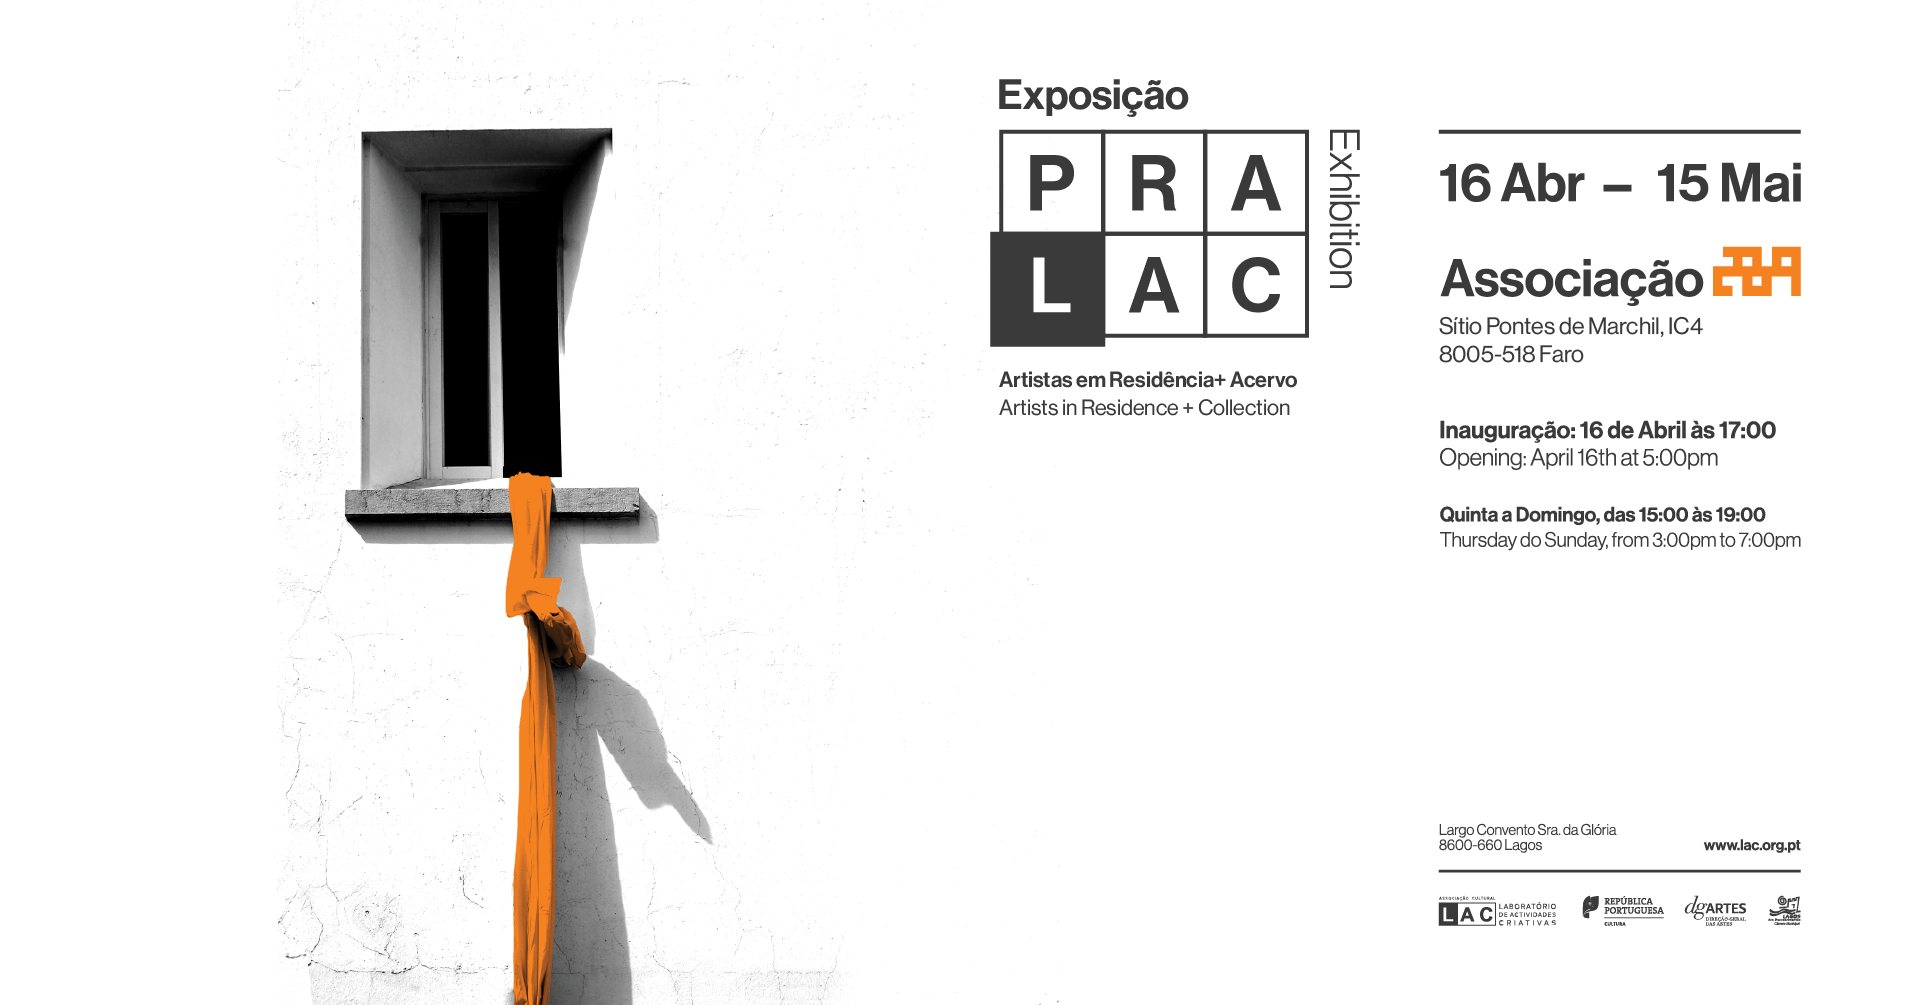 Exposição Coletiva PRALAC - Associação 289, Faro